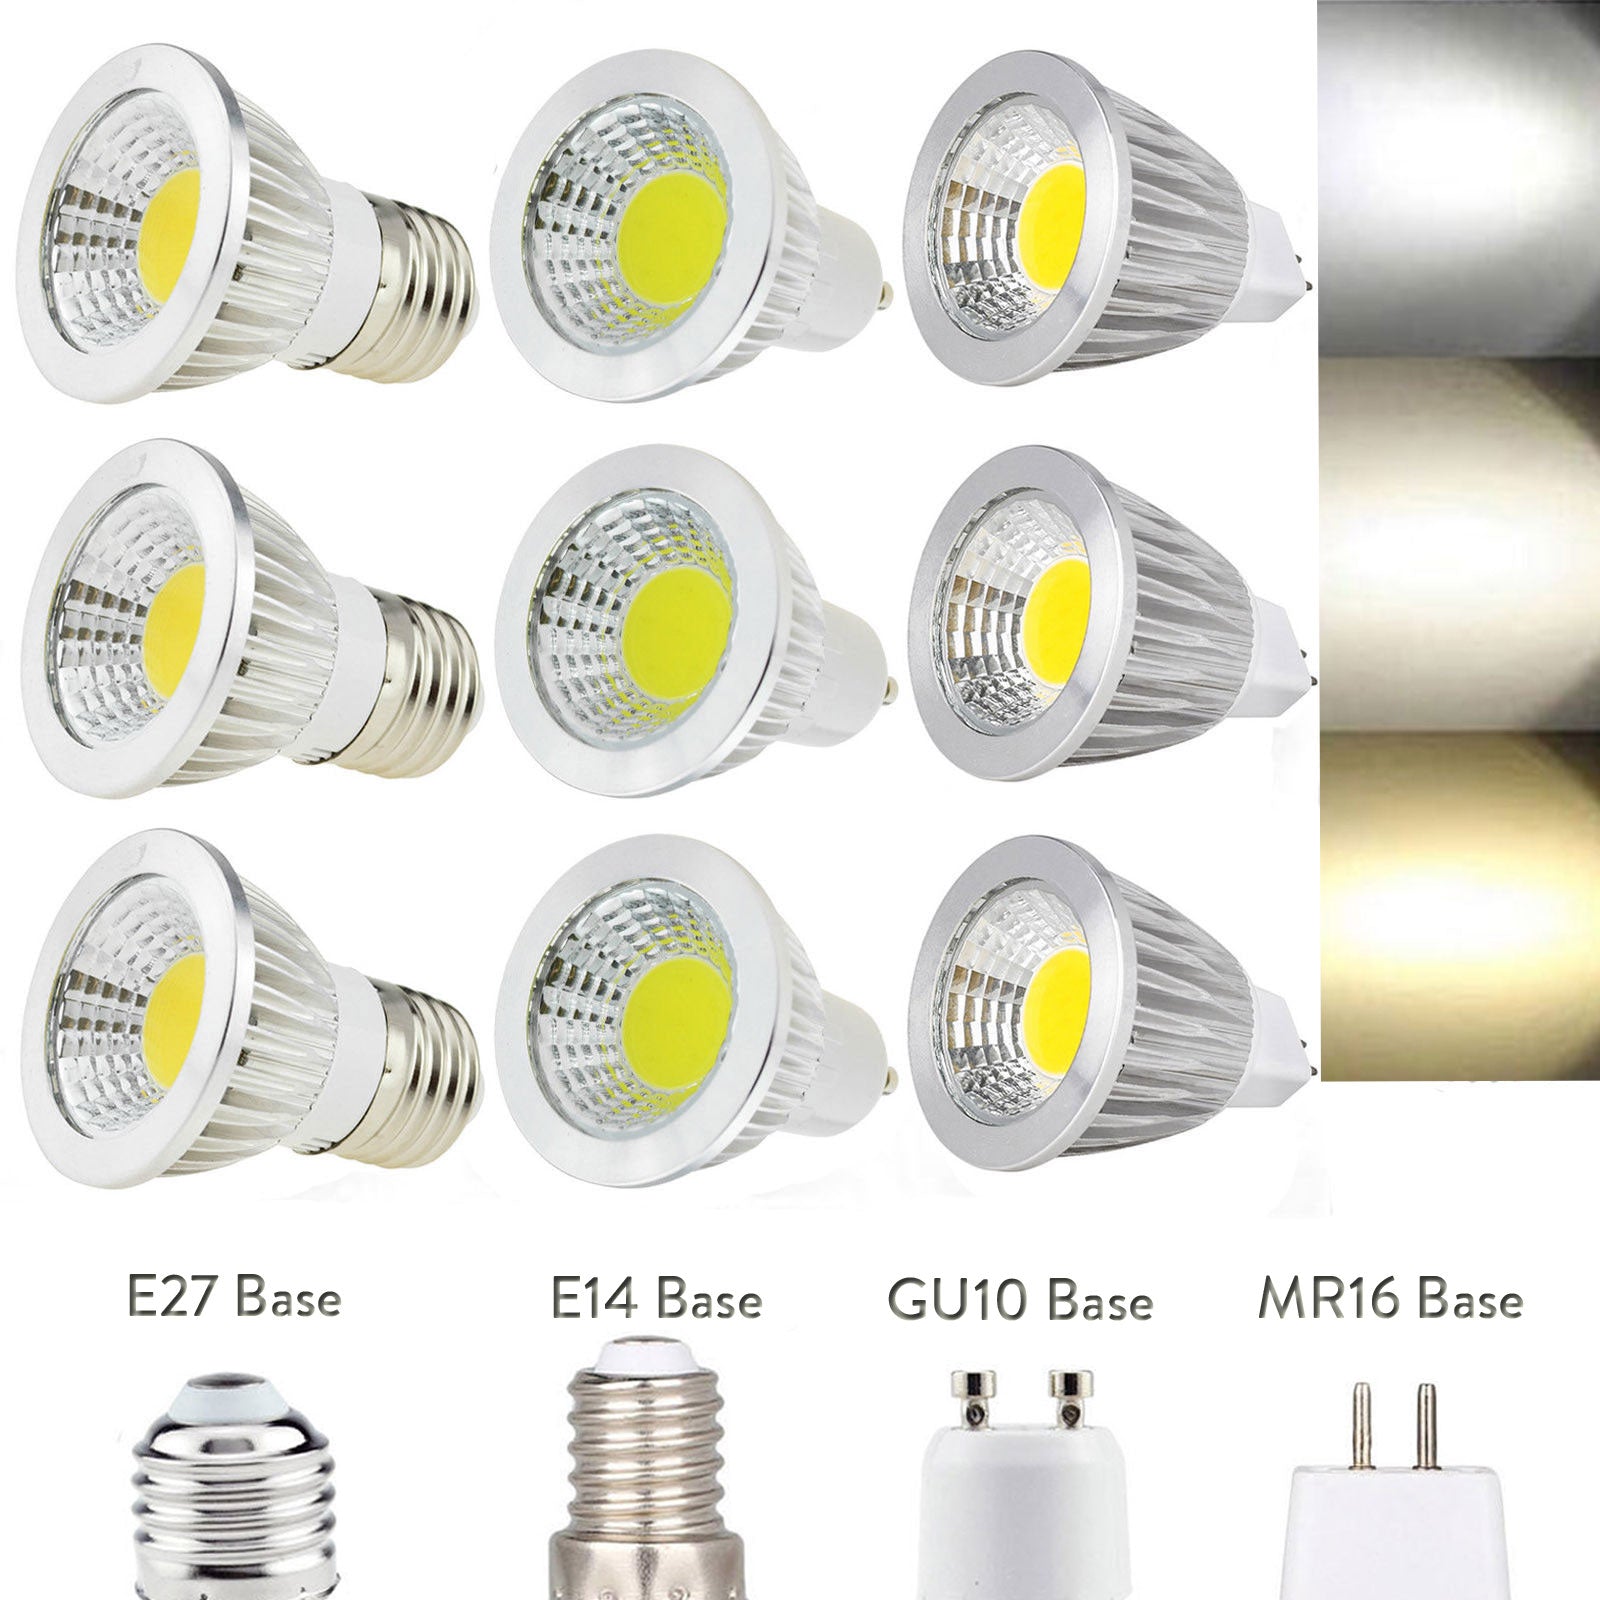 Super Bright LED COB Spotlight Bulbs GU10 B22  E27 E14 6W 9W 12W Lamps LED lamp light  Spot Lights AC 220V - 240V Downlight